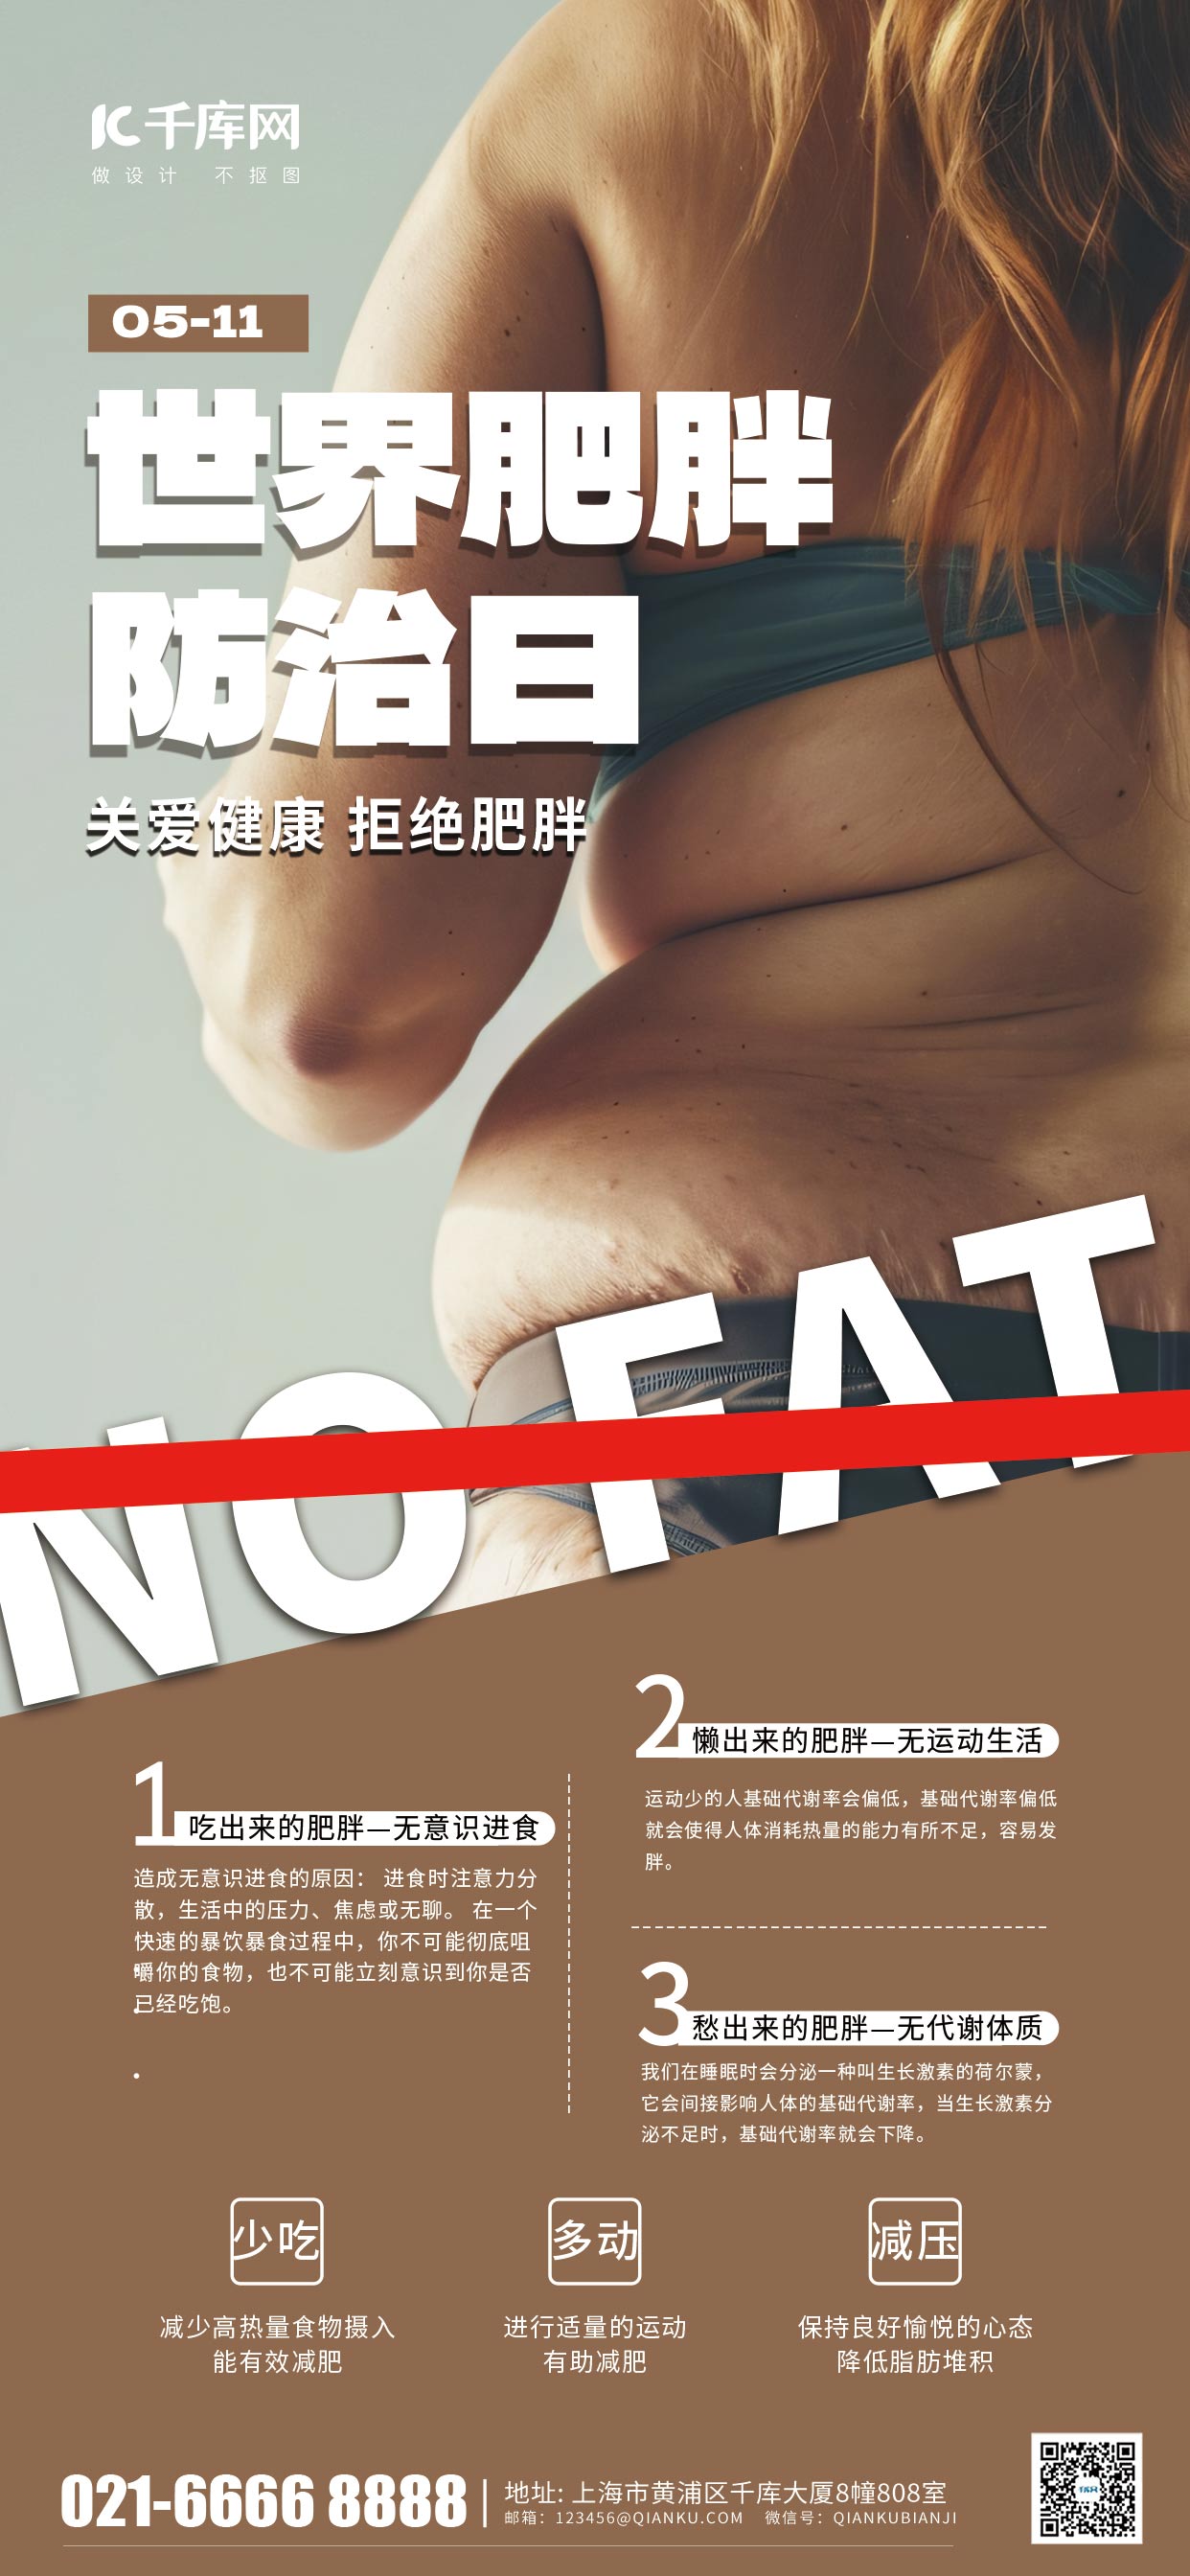 世界肥胖防治日胖子背影肉色简约手机海报海报制作图片